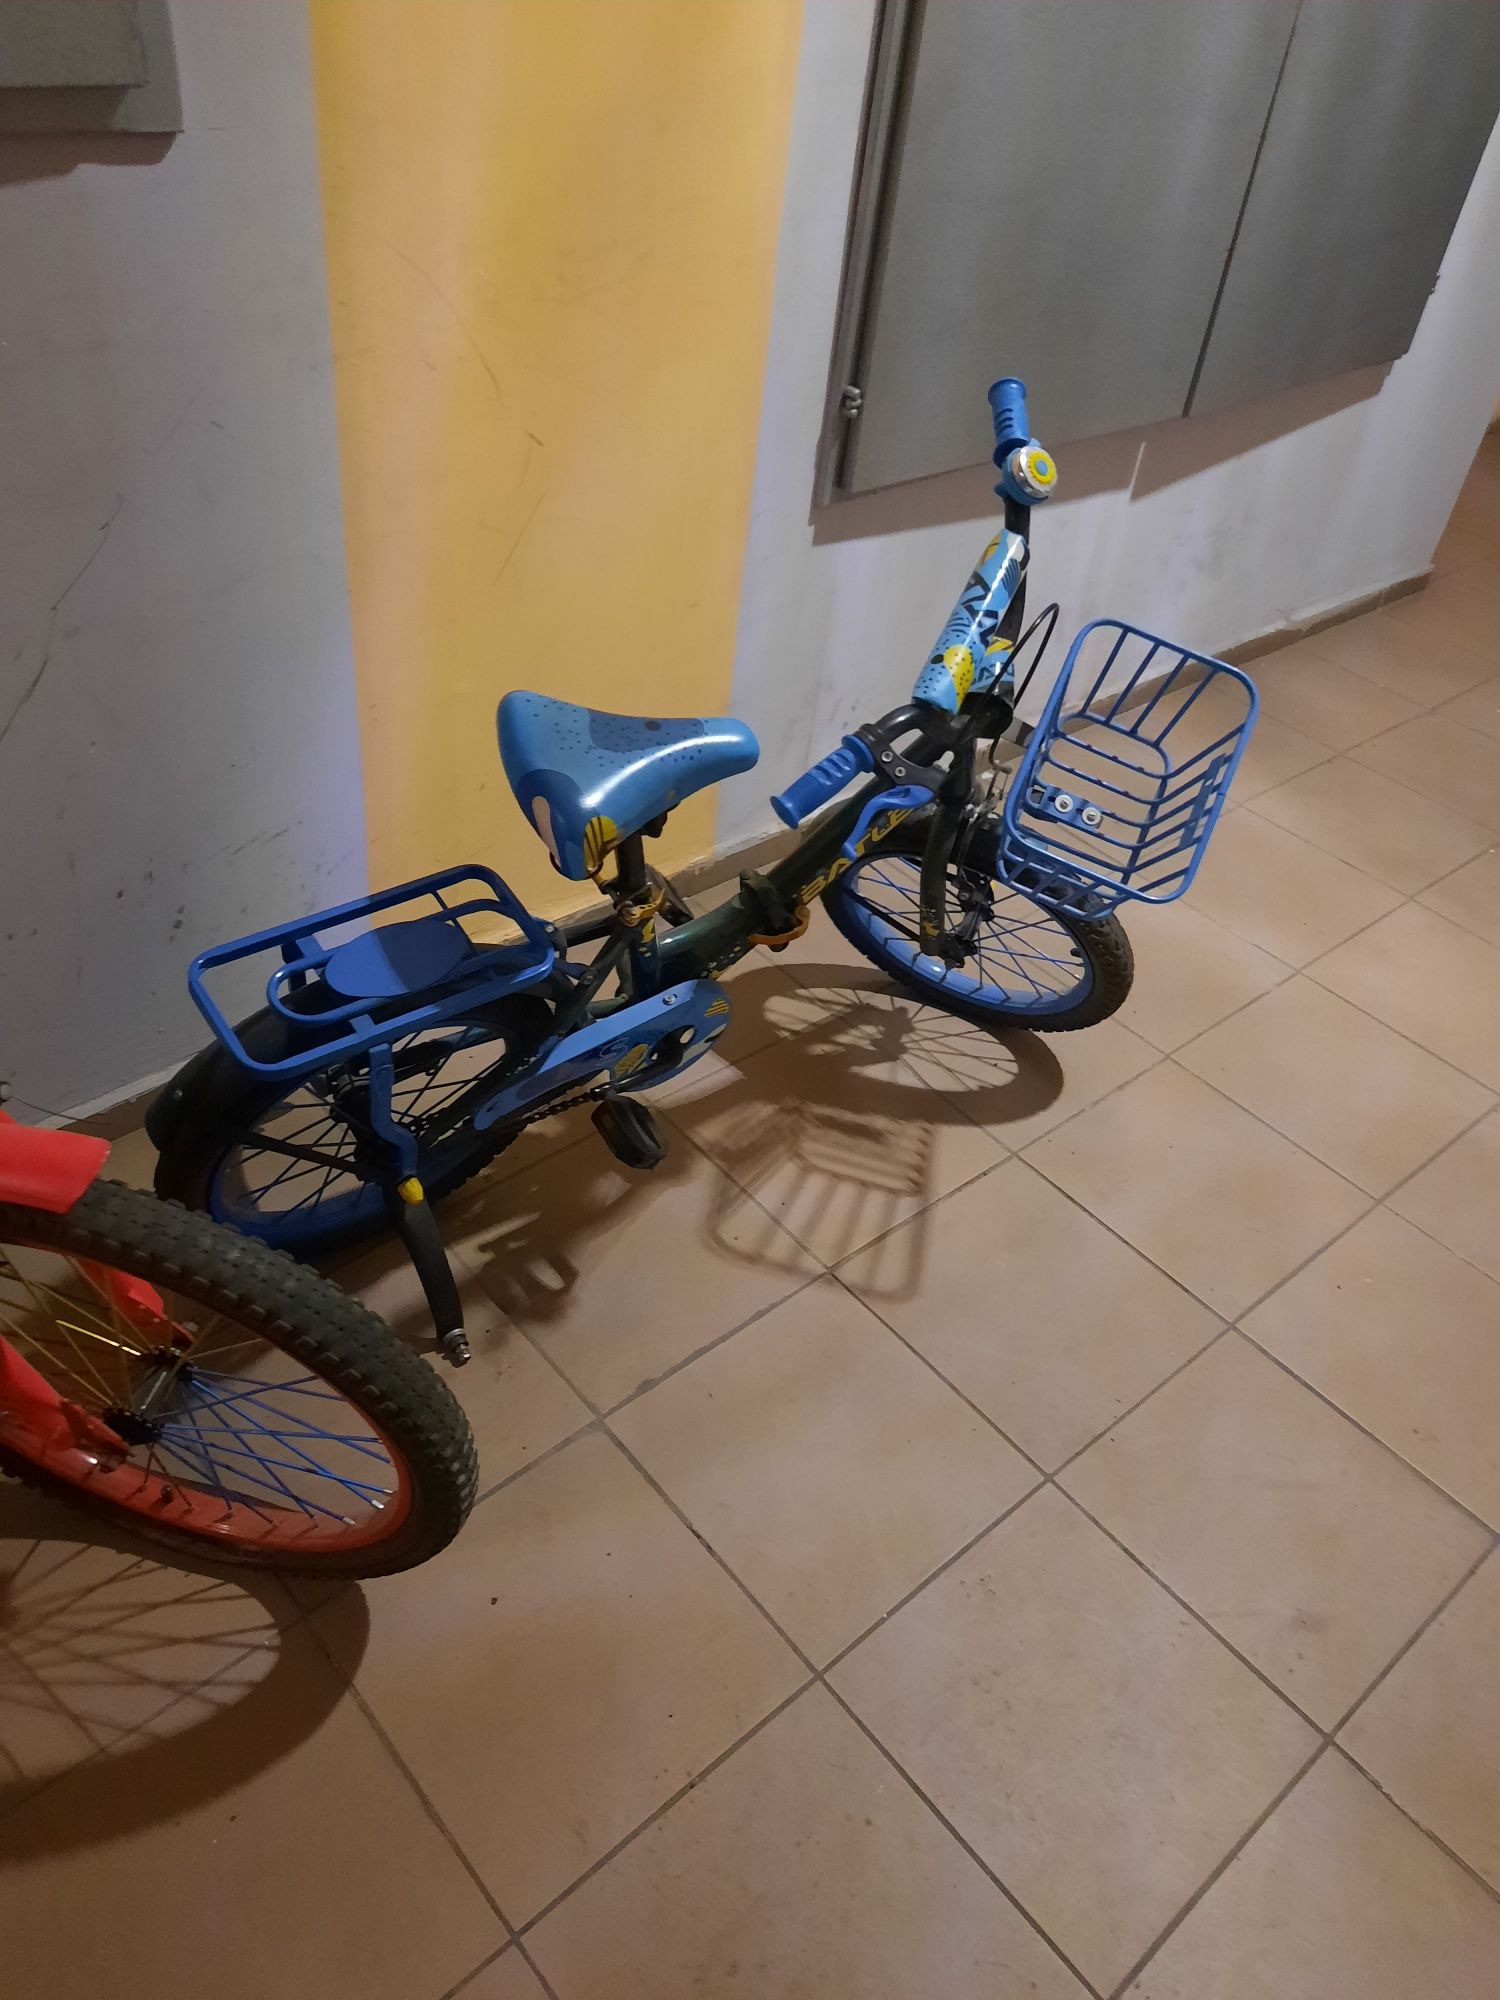 Детские велосипеды